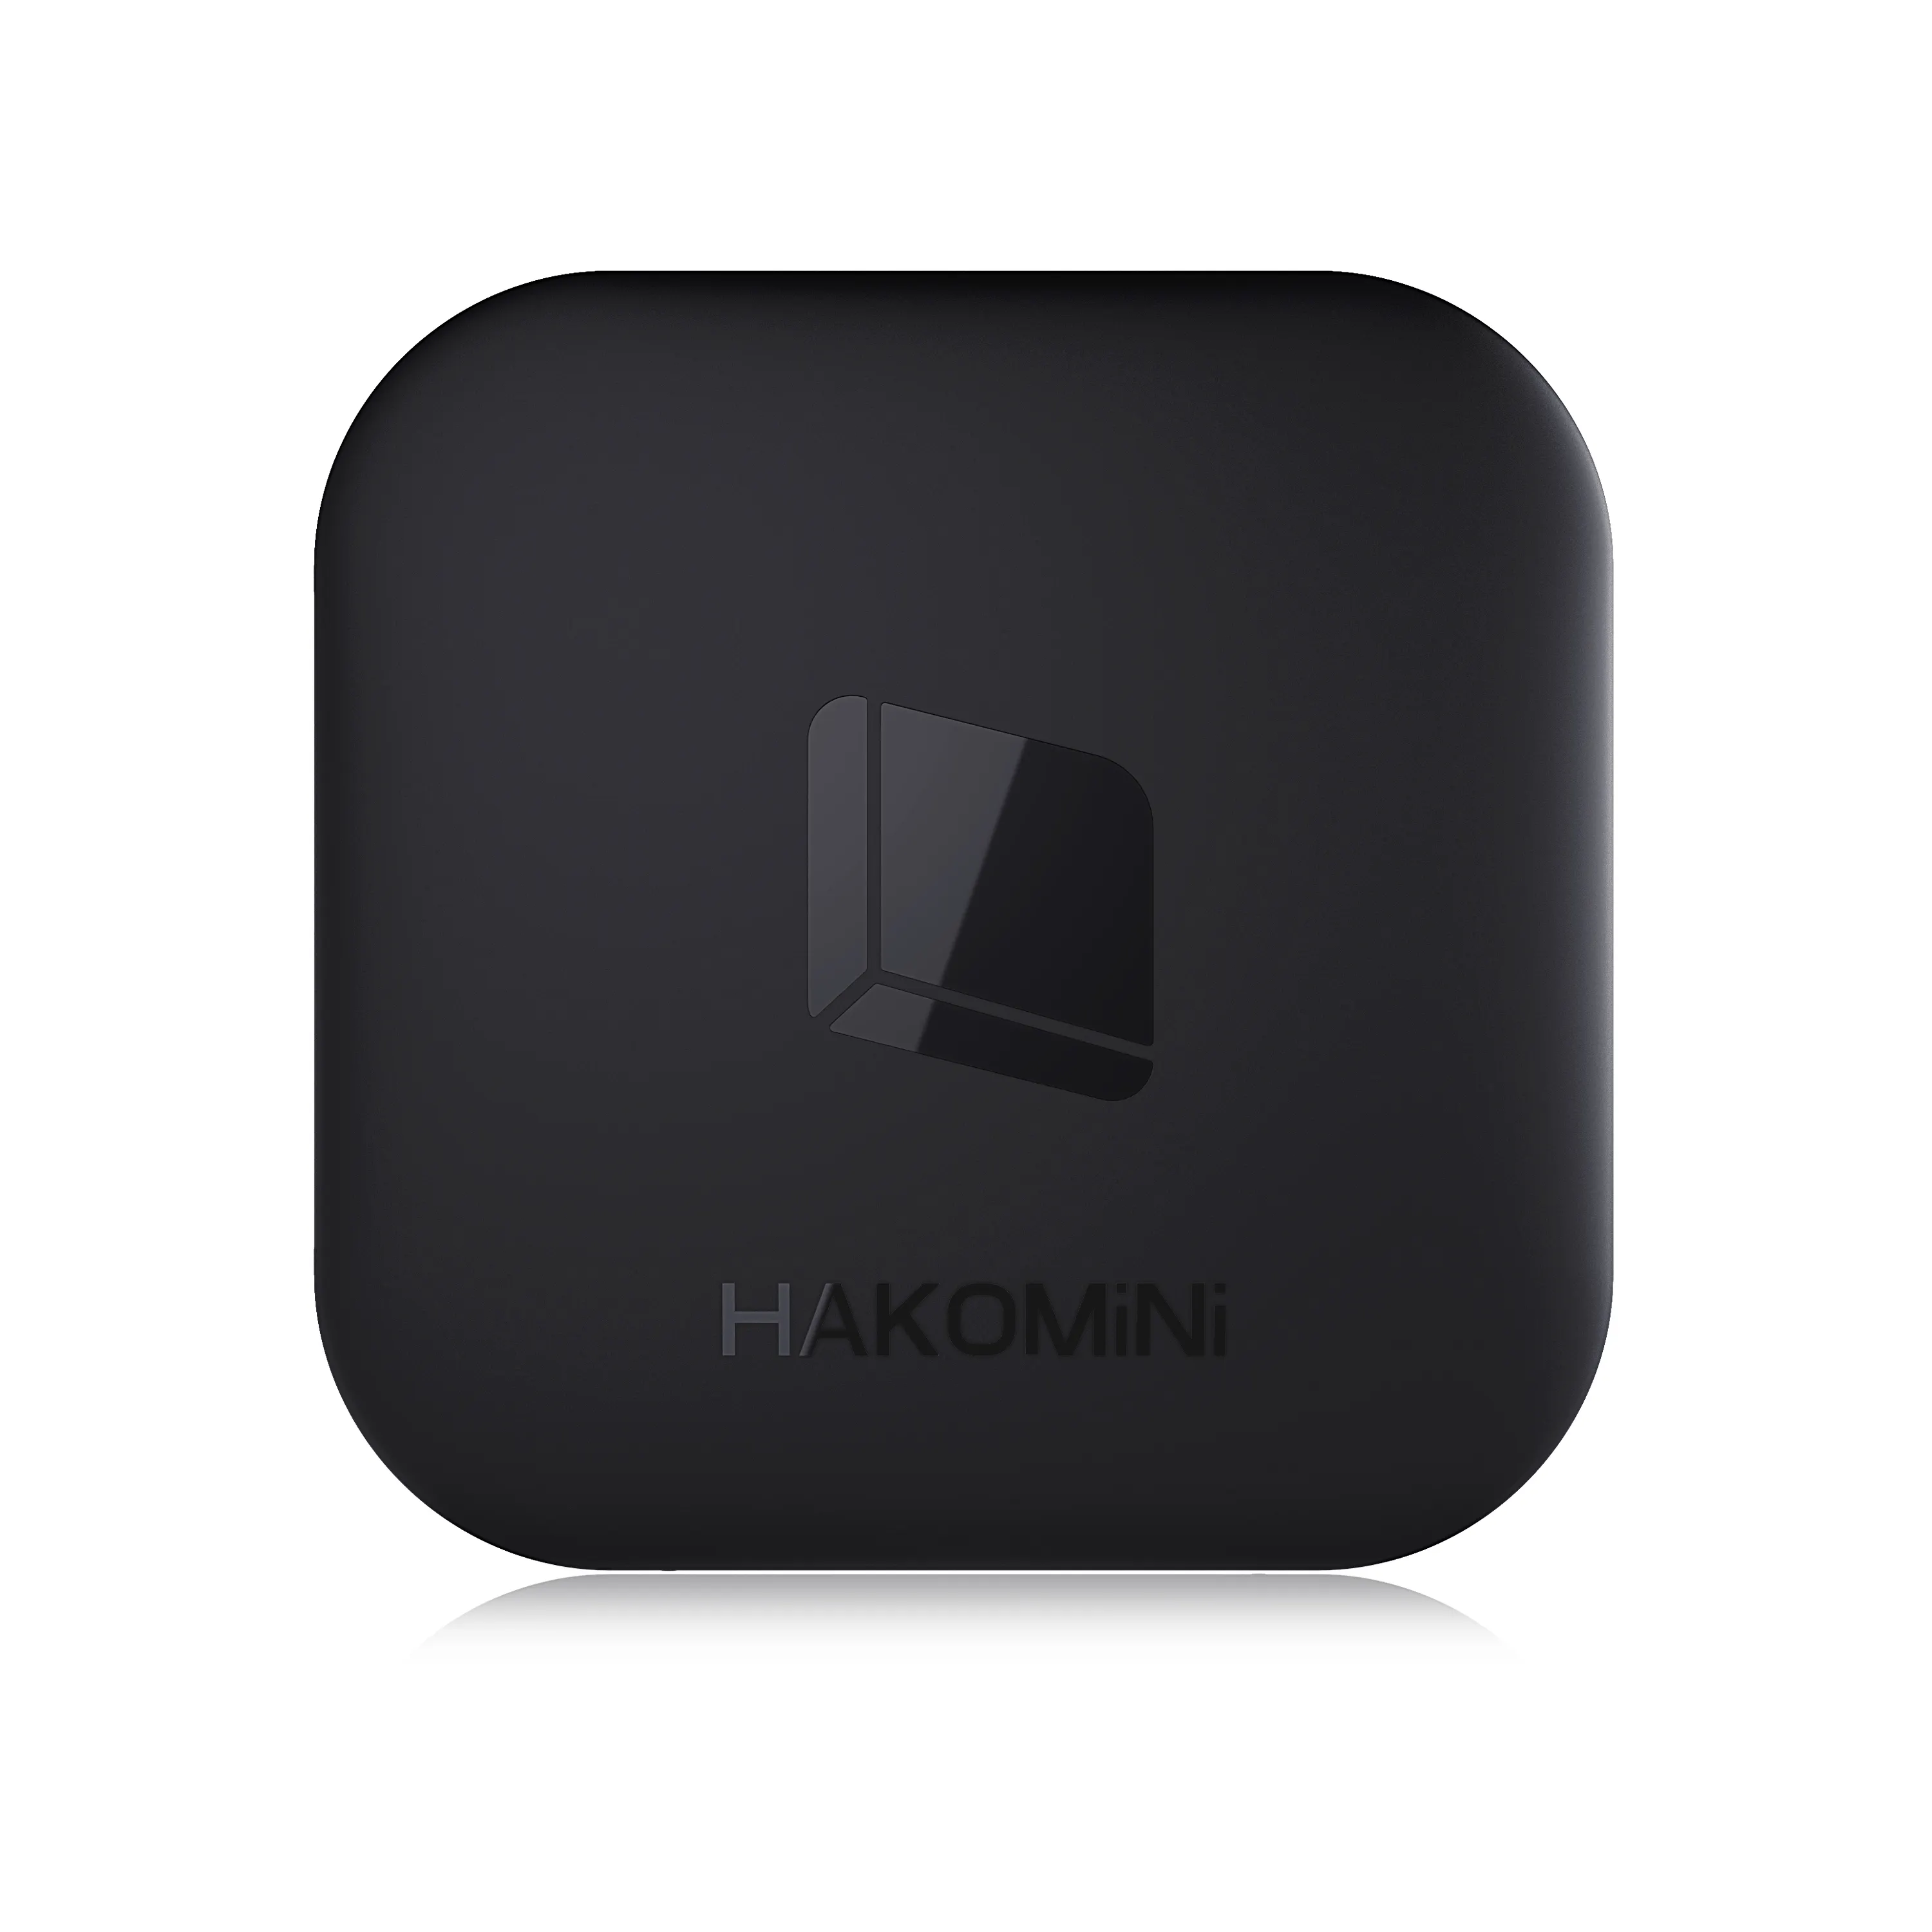 Khako-mini boîtier TV Android certifié volka, récepteur vocal, WiFi double bande, 4K